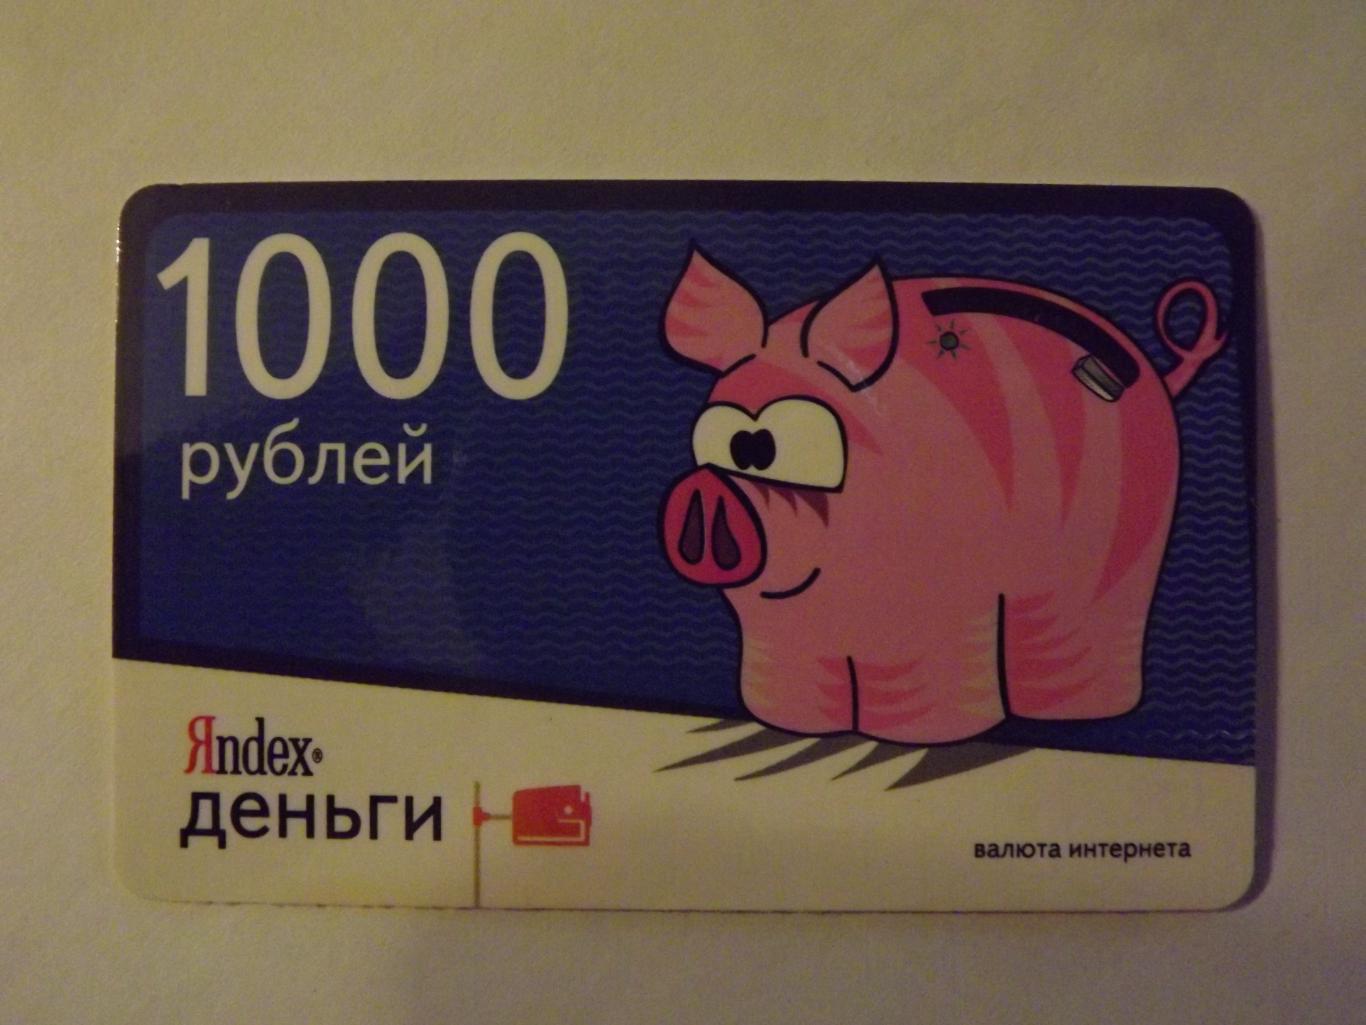 Карта Яндекс деньги (вид 3)